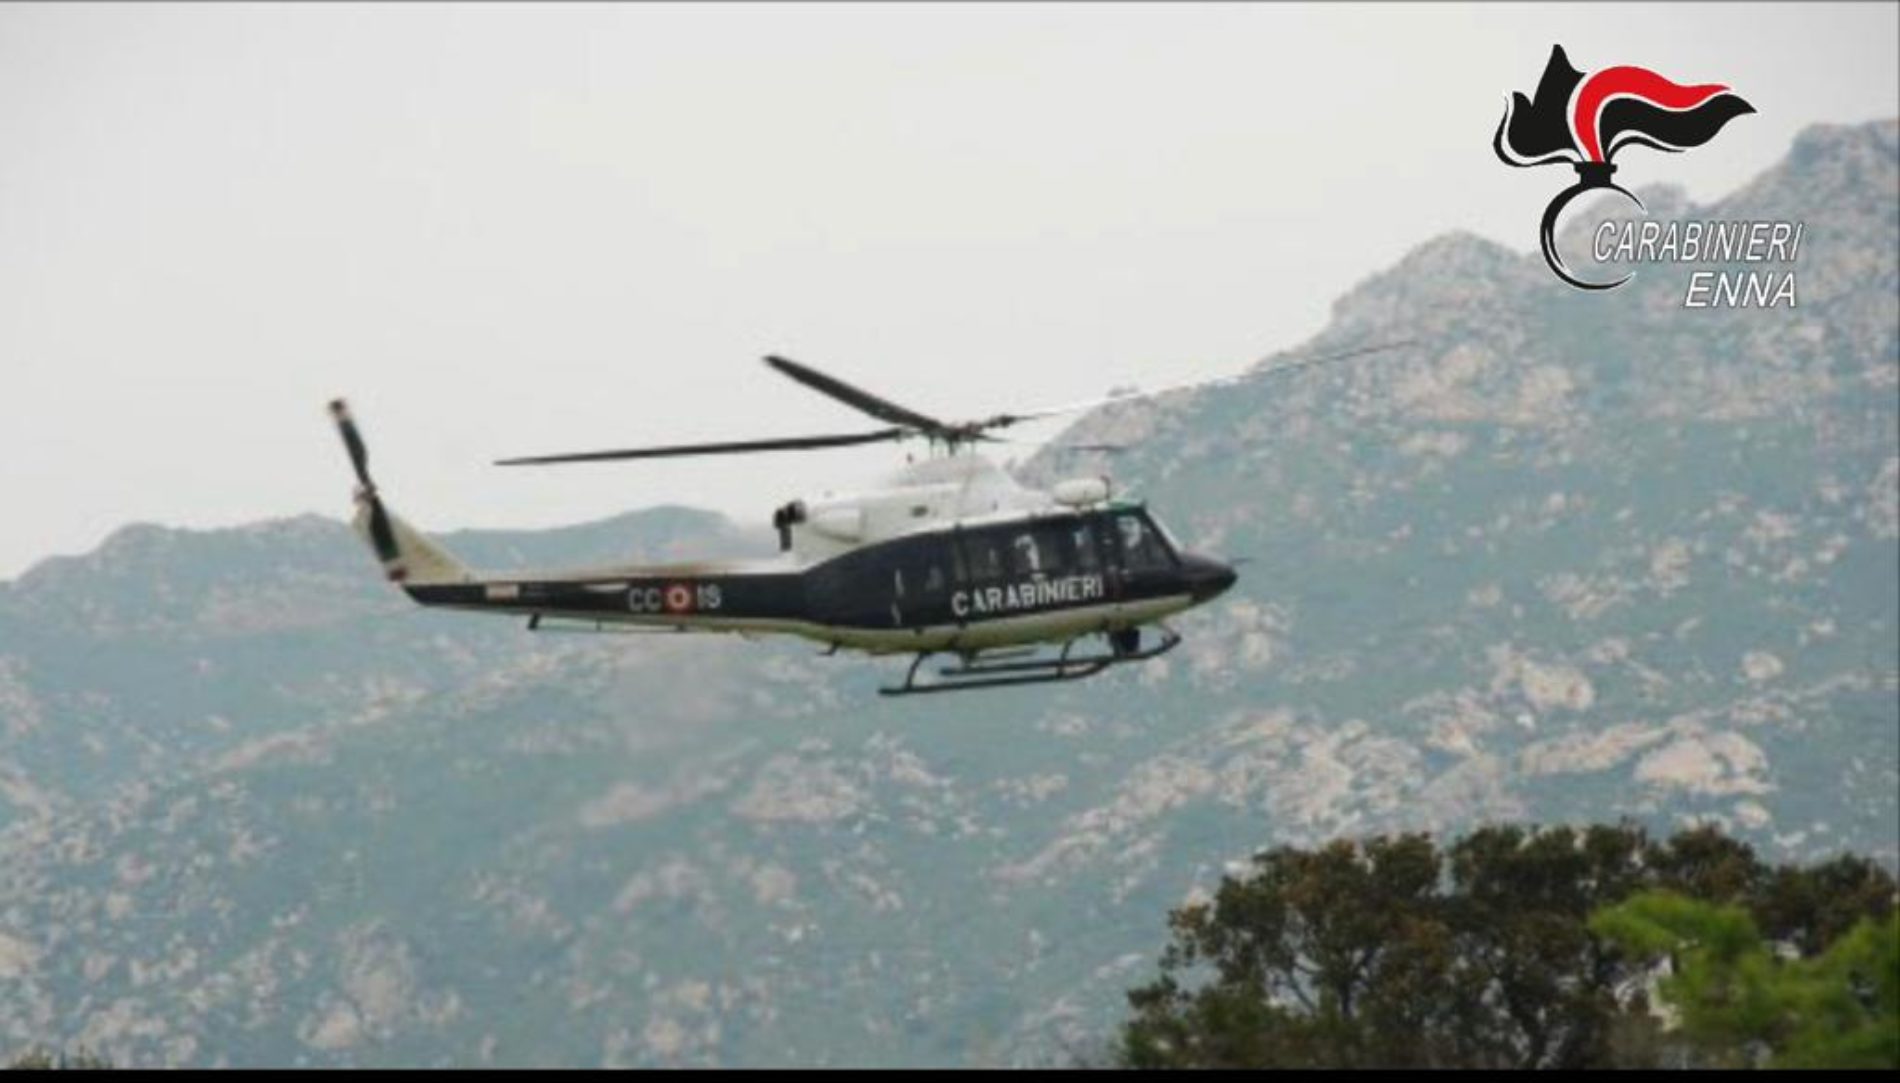 ENNA. Controllo del territorio con il supporto elicottero nelle campagne ennesi